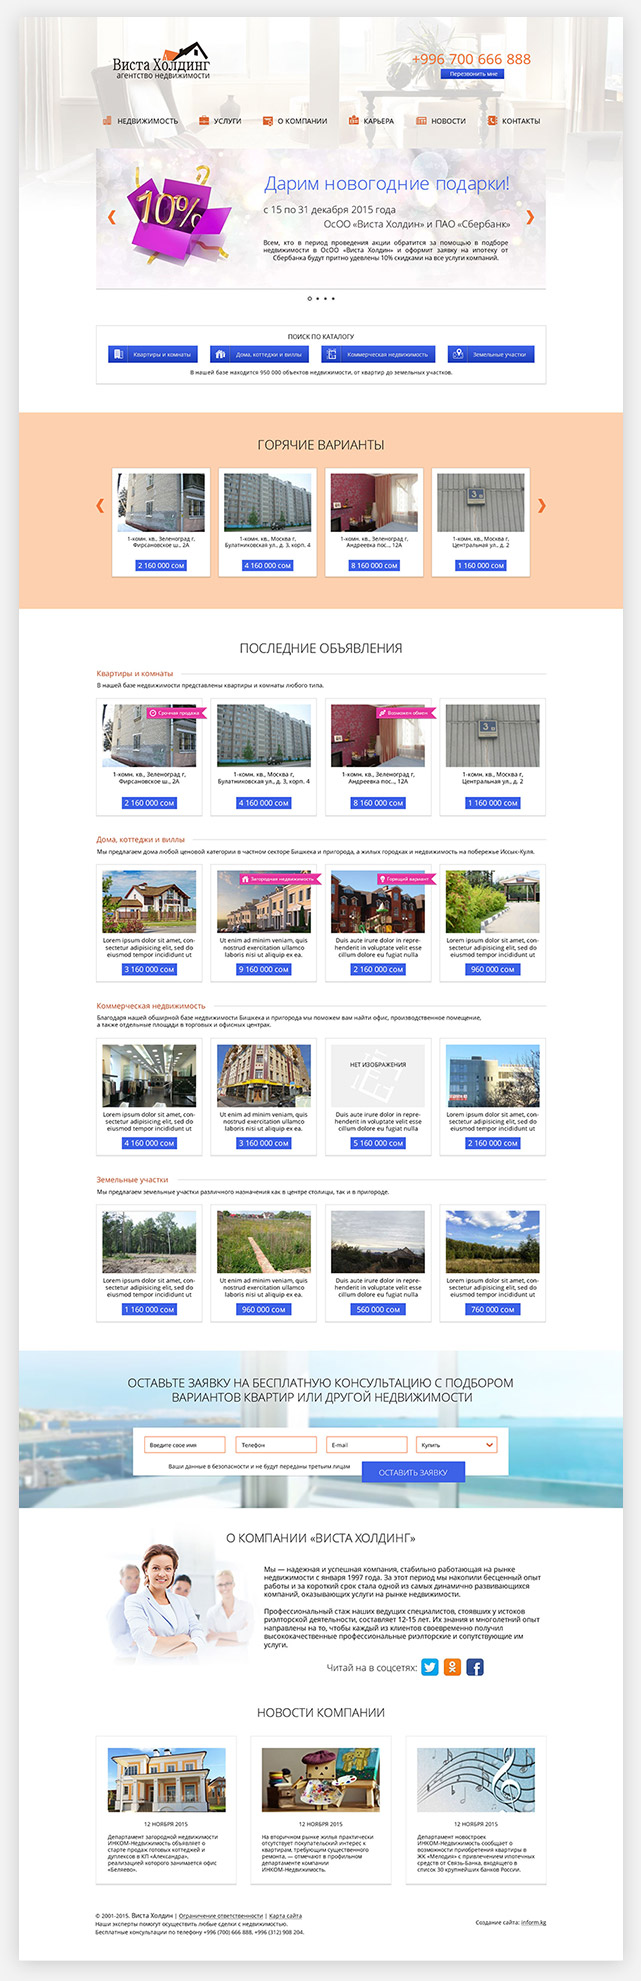 Дизайн главной страницы сайта агентства недвижимости «Виста холдинг»